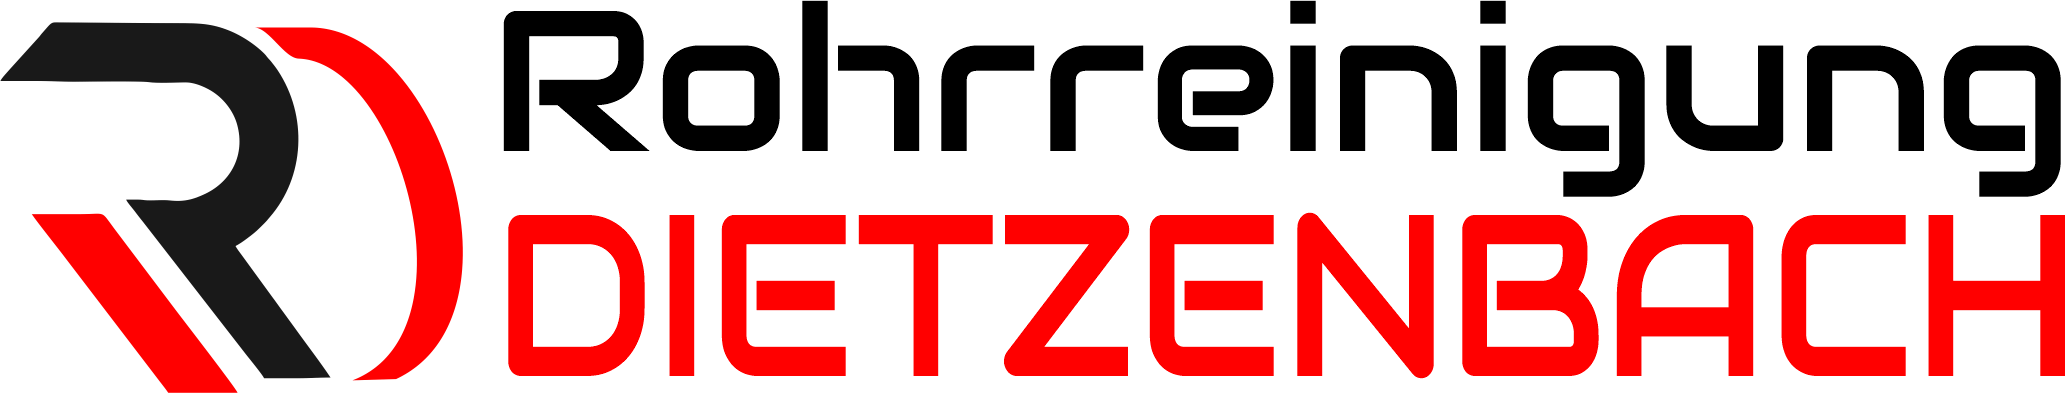 Rohrreinigung Dietzenbach Logo